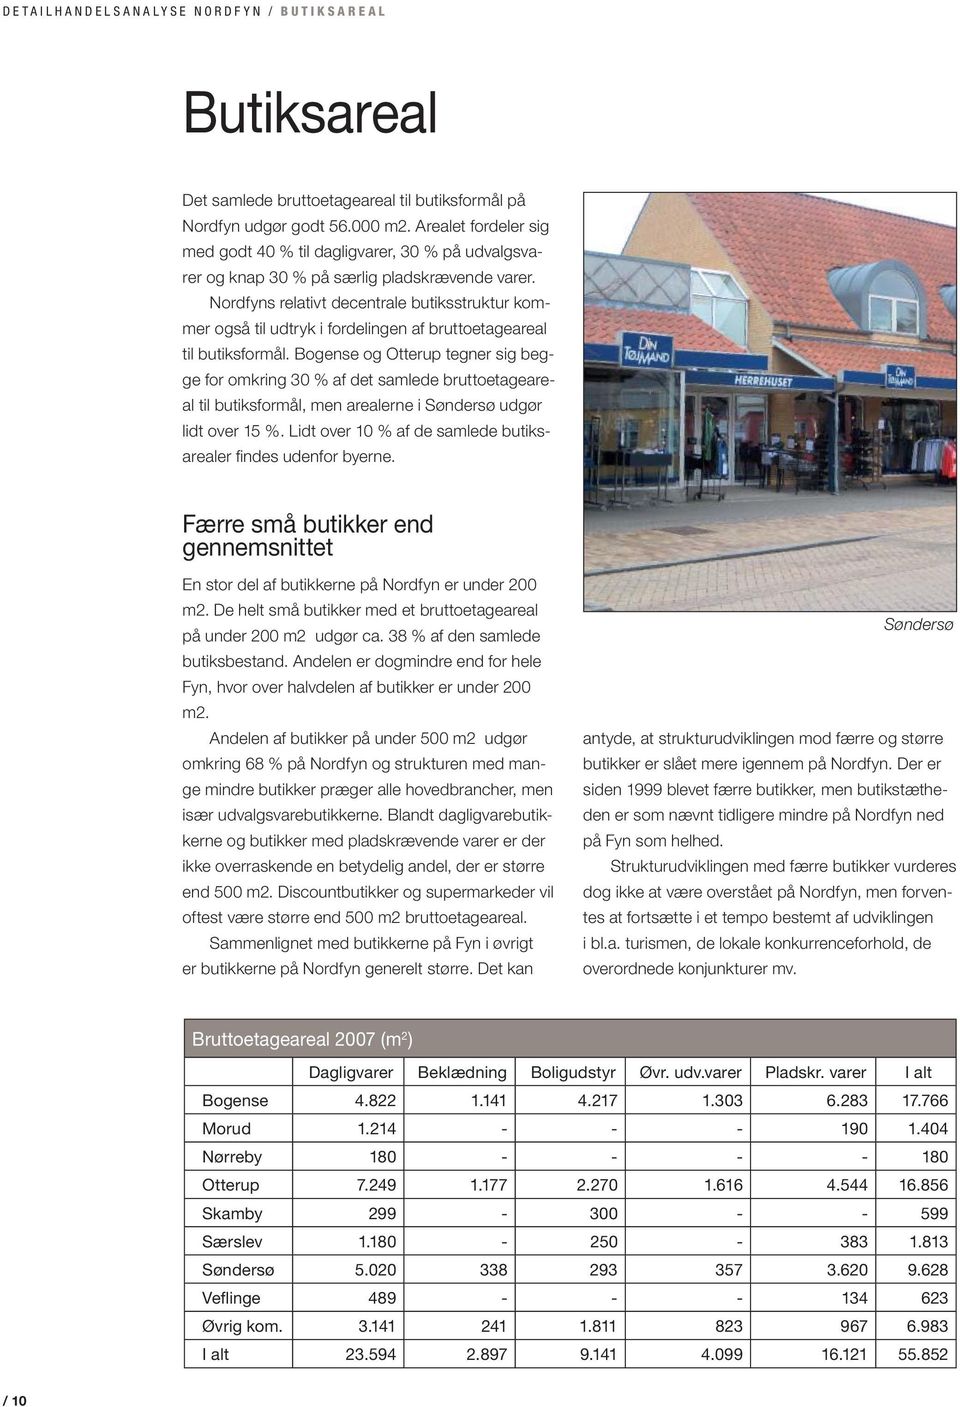 Nordfyns relativt decentrale butiksstruktur kommer også til udtryk i fordelingen af bruttoetageareal til butiksformål.